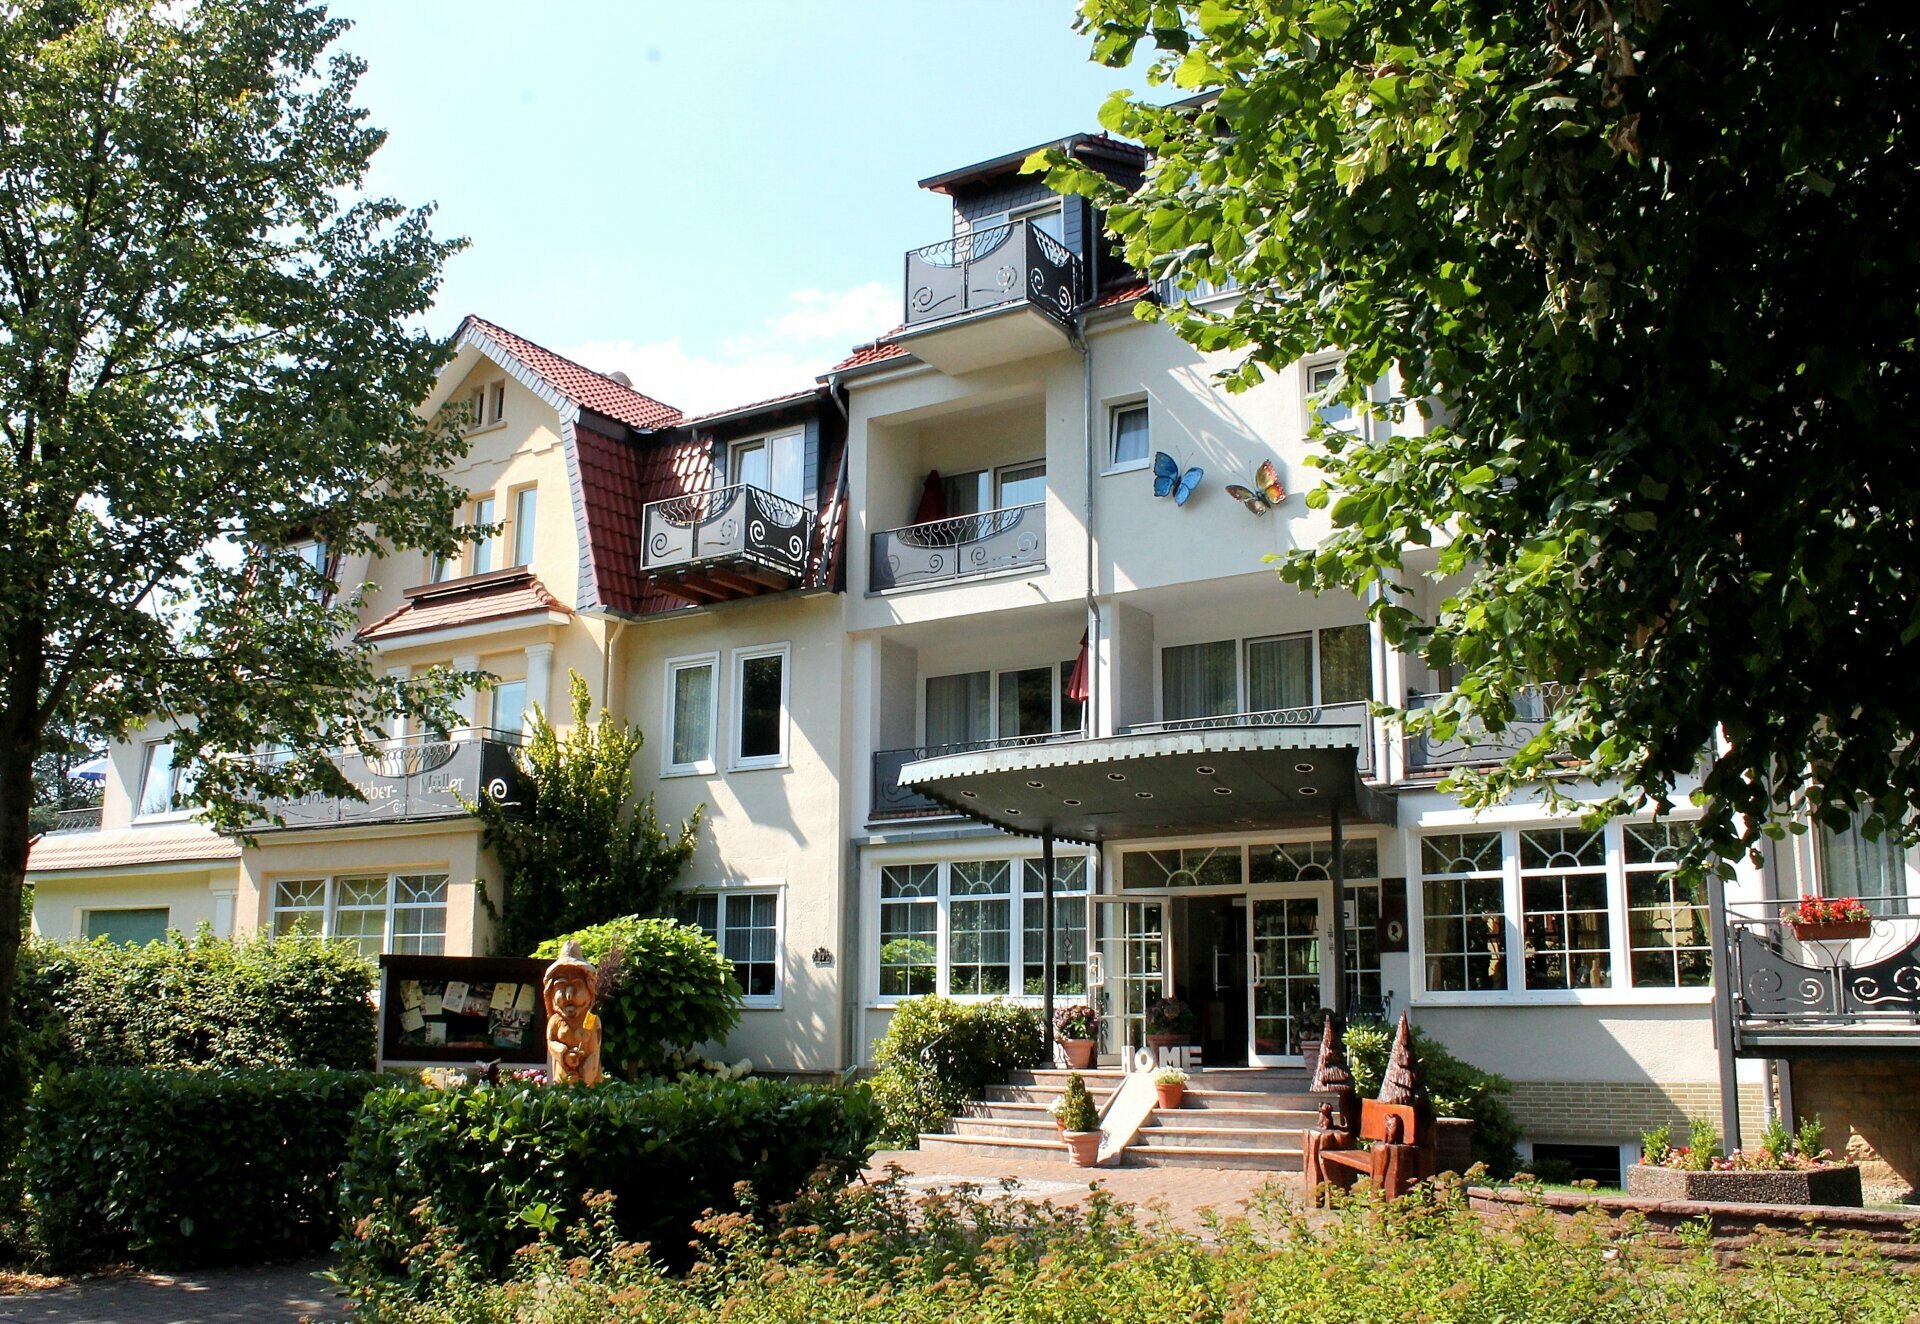 2 Tage Beautyzauber® – Parkhotel Weber-Müller  (4 Sterne) in Bad Lauterberg, Niedersachsen inkl. Halbpension